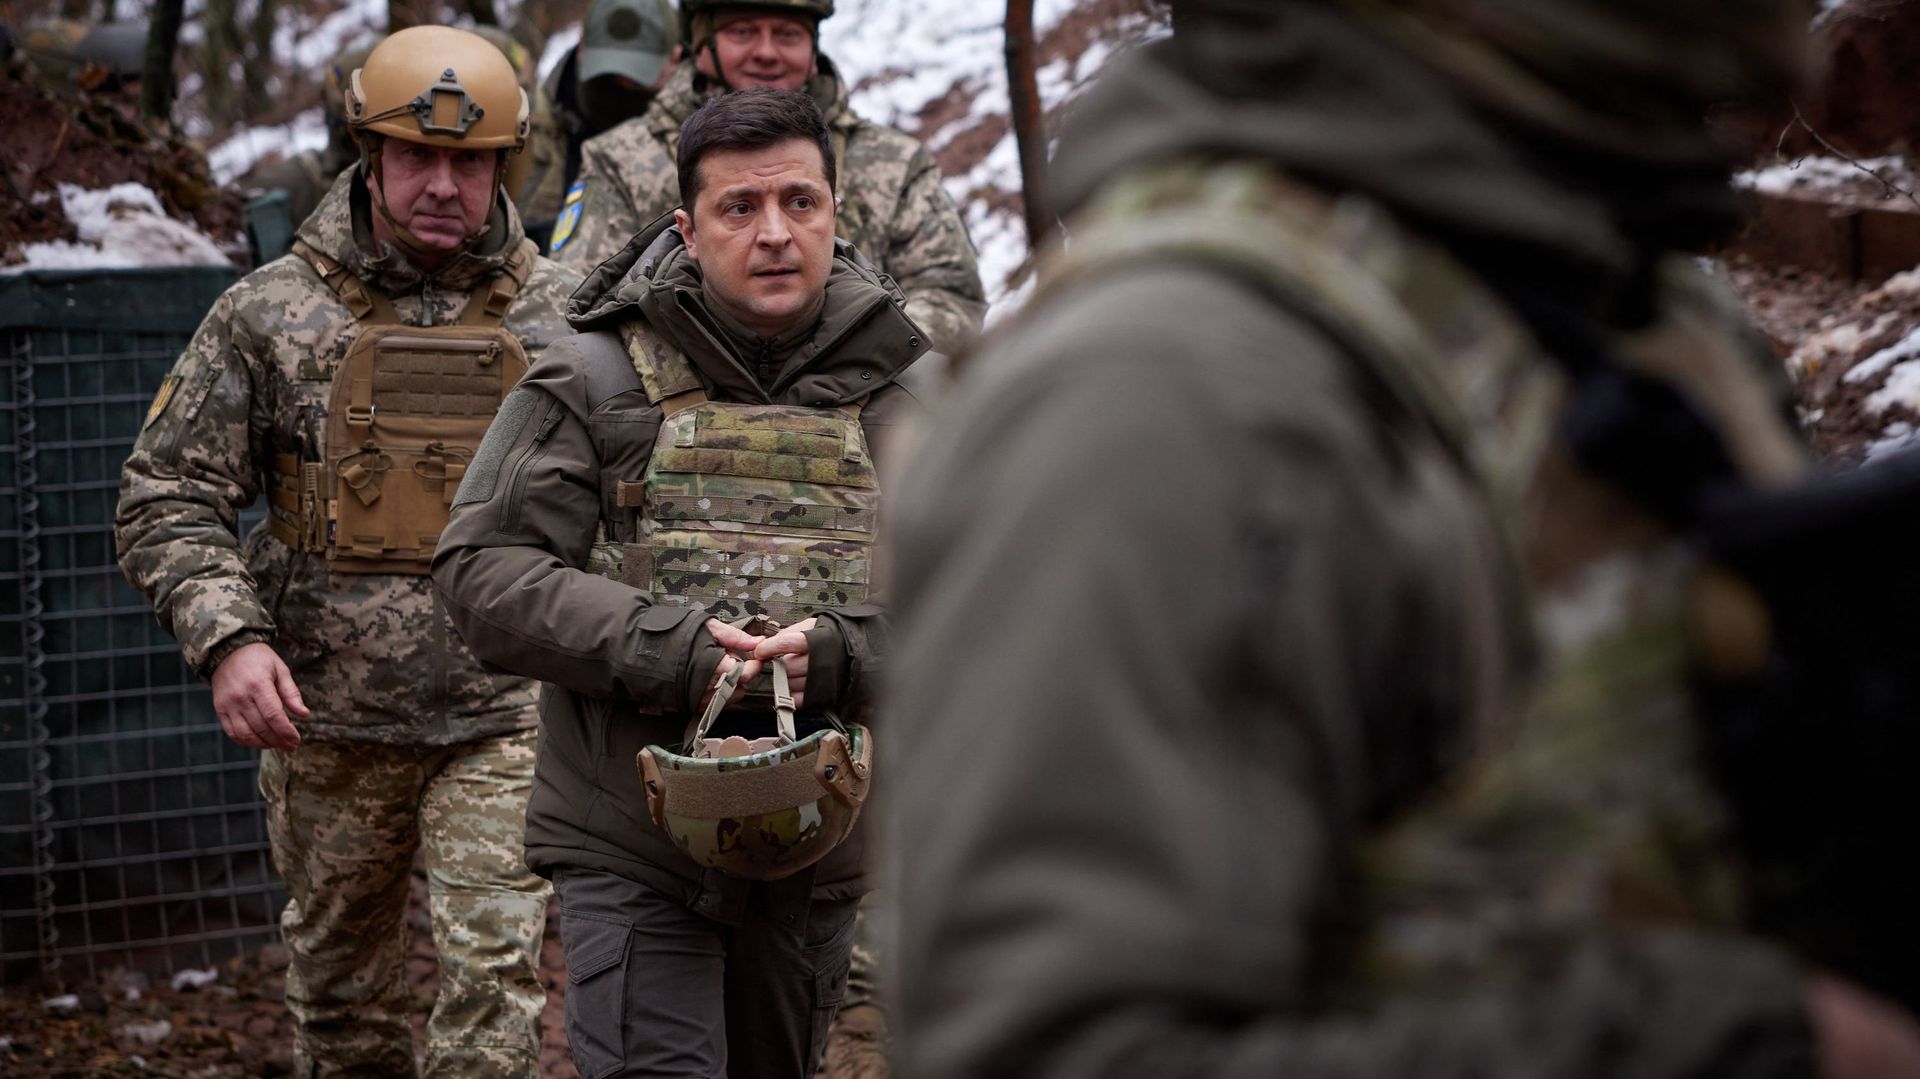 Le président ukrainien Volodymyr Zelensky en visite, le 6 décembre, à proximité de ligne de front avec les forces séparatistes pro-russses.